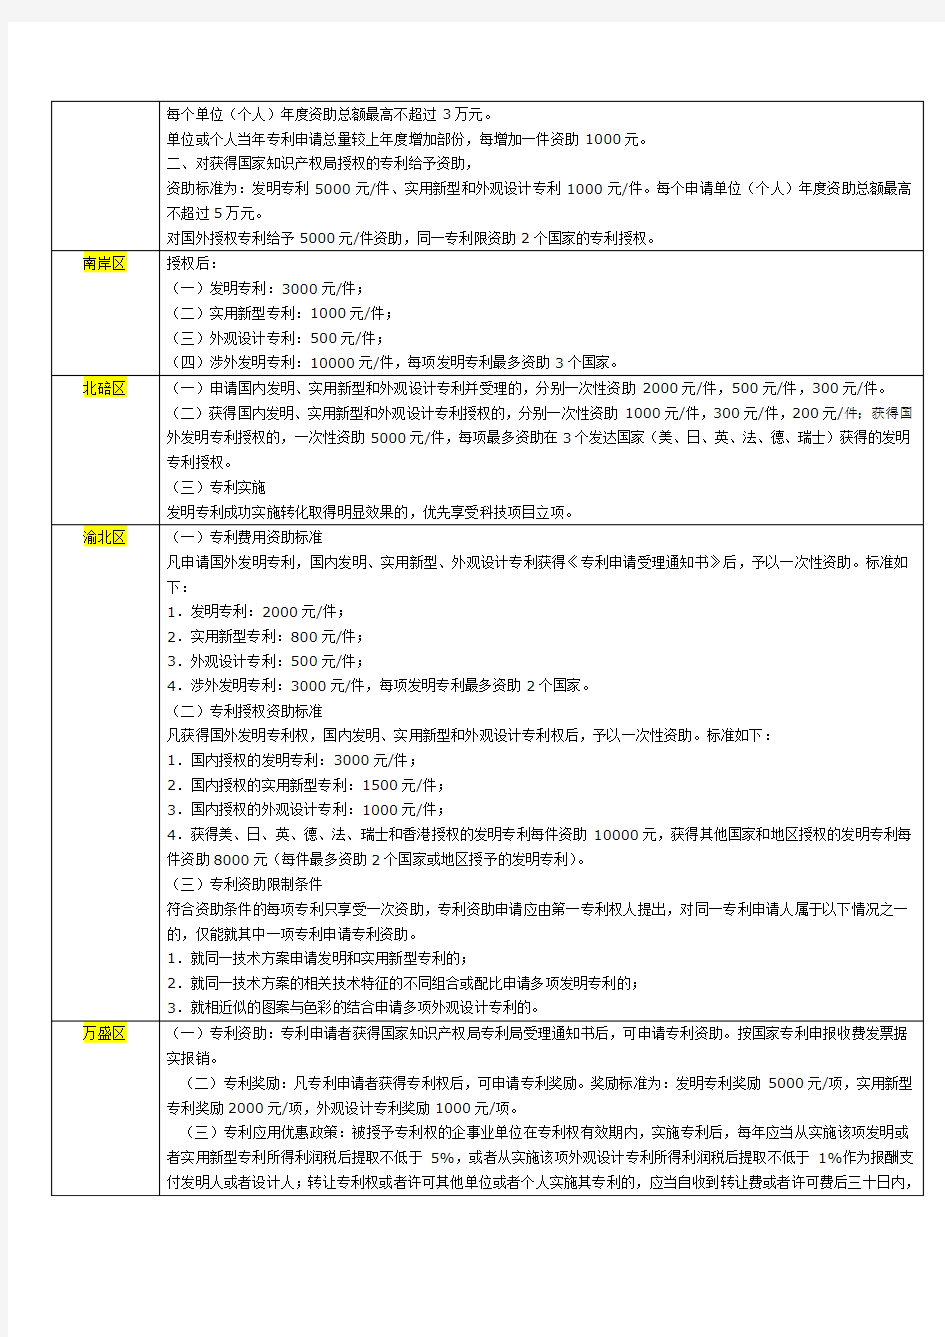 重庆市各区县获得国家发明专利、实用新型和外观设计专利授权资助额度表(2012-10-24更新)